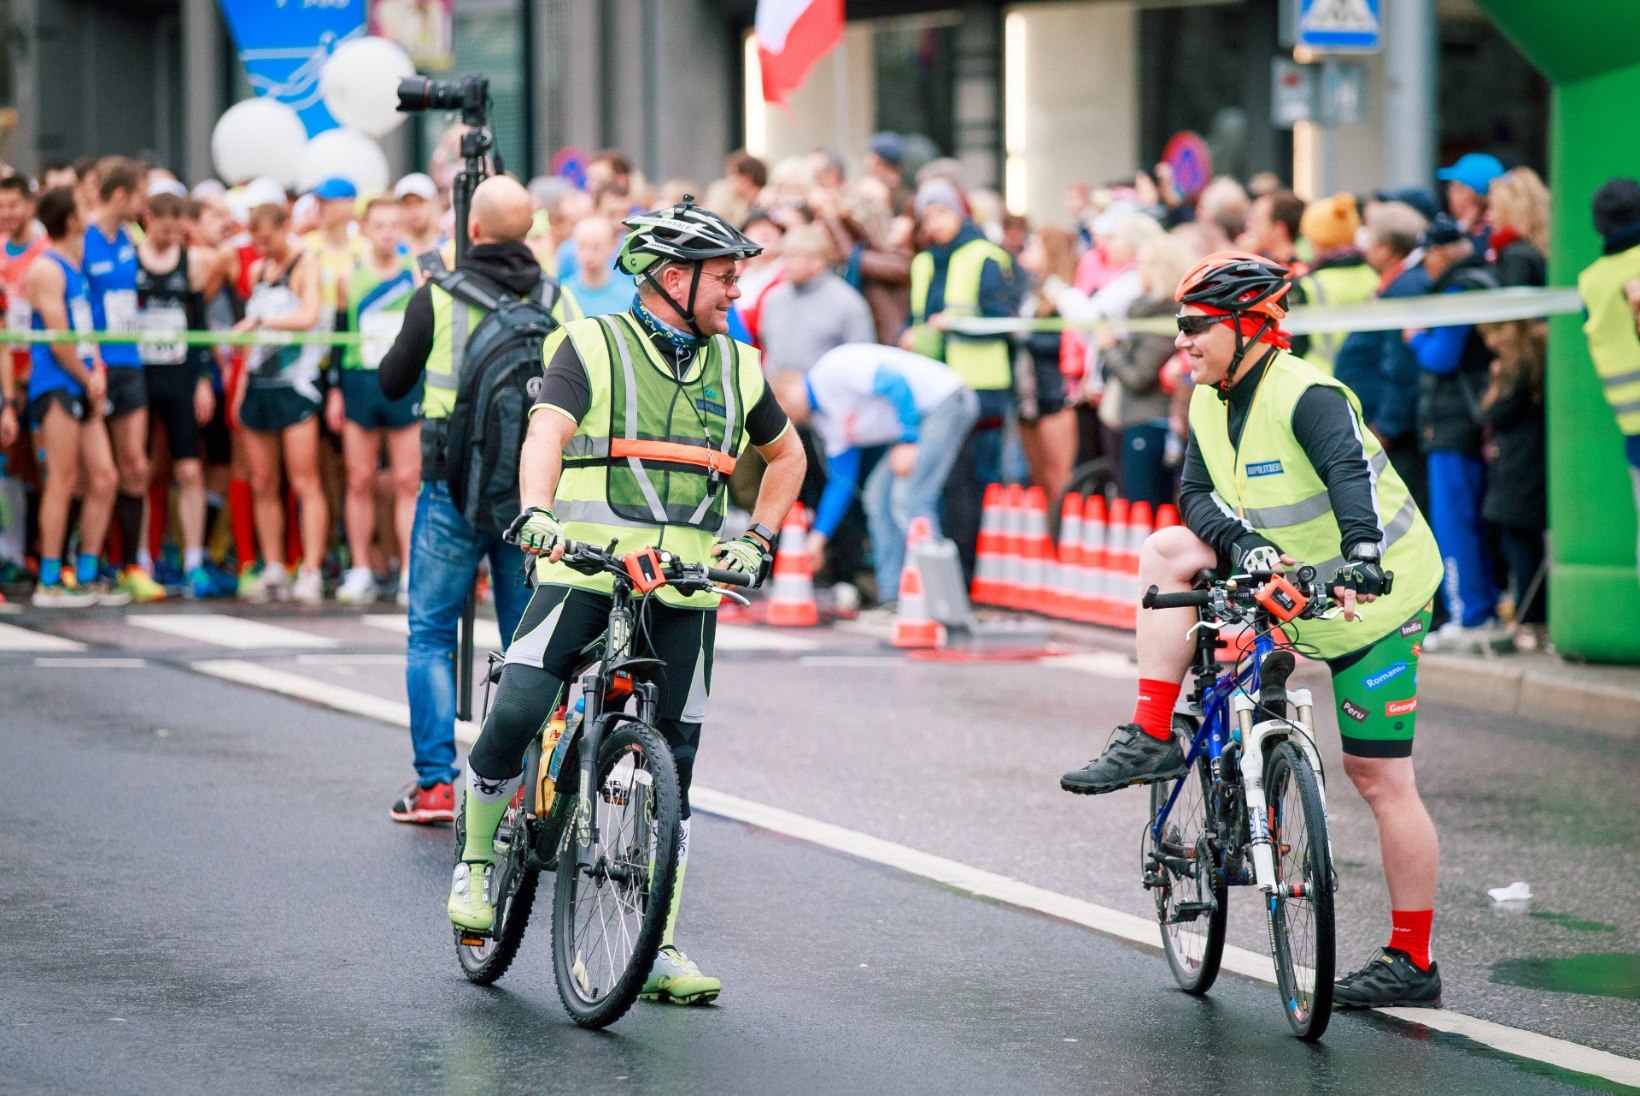 GALERII | Tallinna Maraton võideti võimsa rekordiga, Eesti sportlane püstitas Guinnessi trikirekordi!